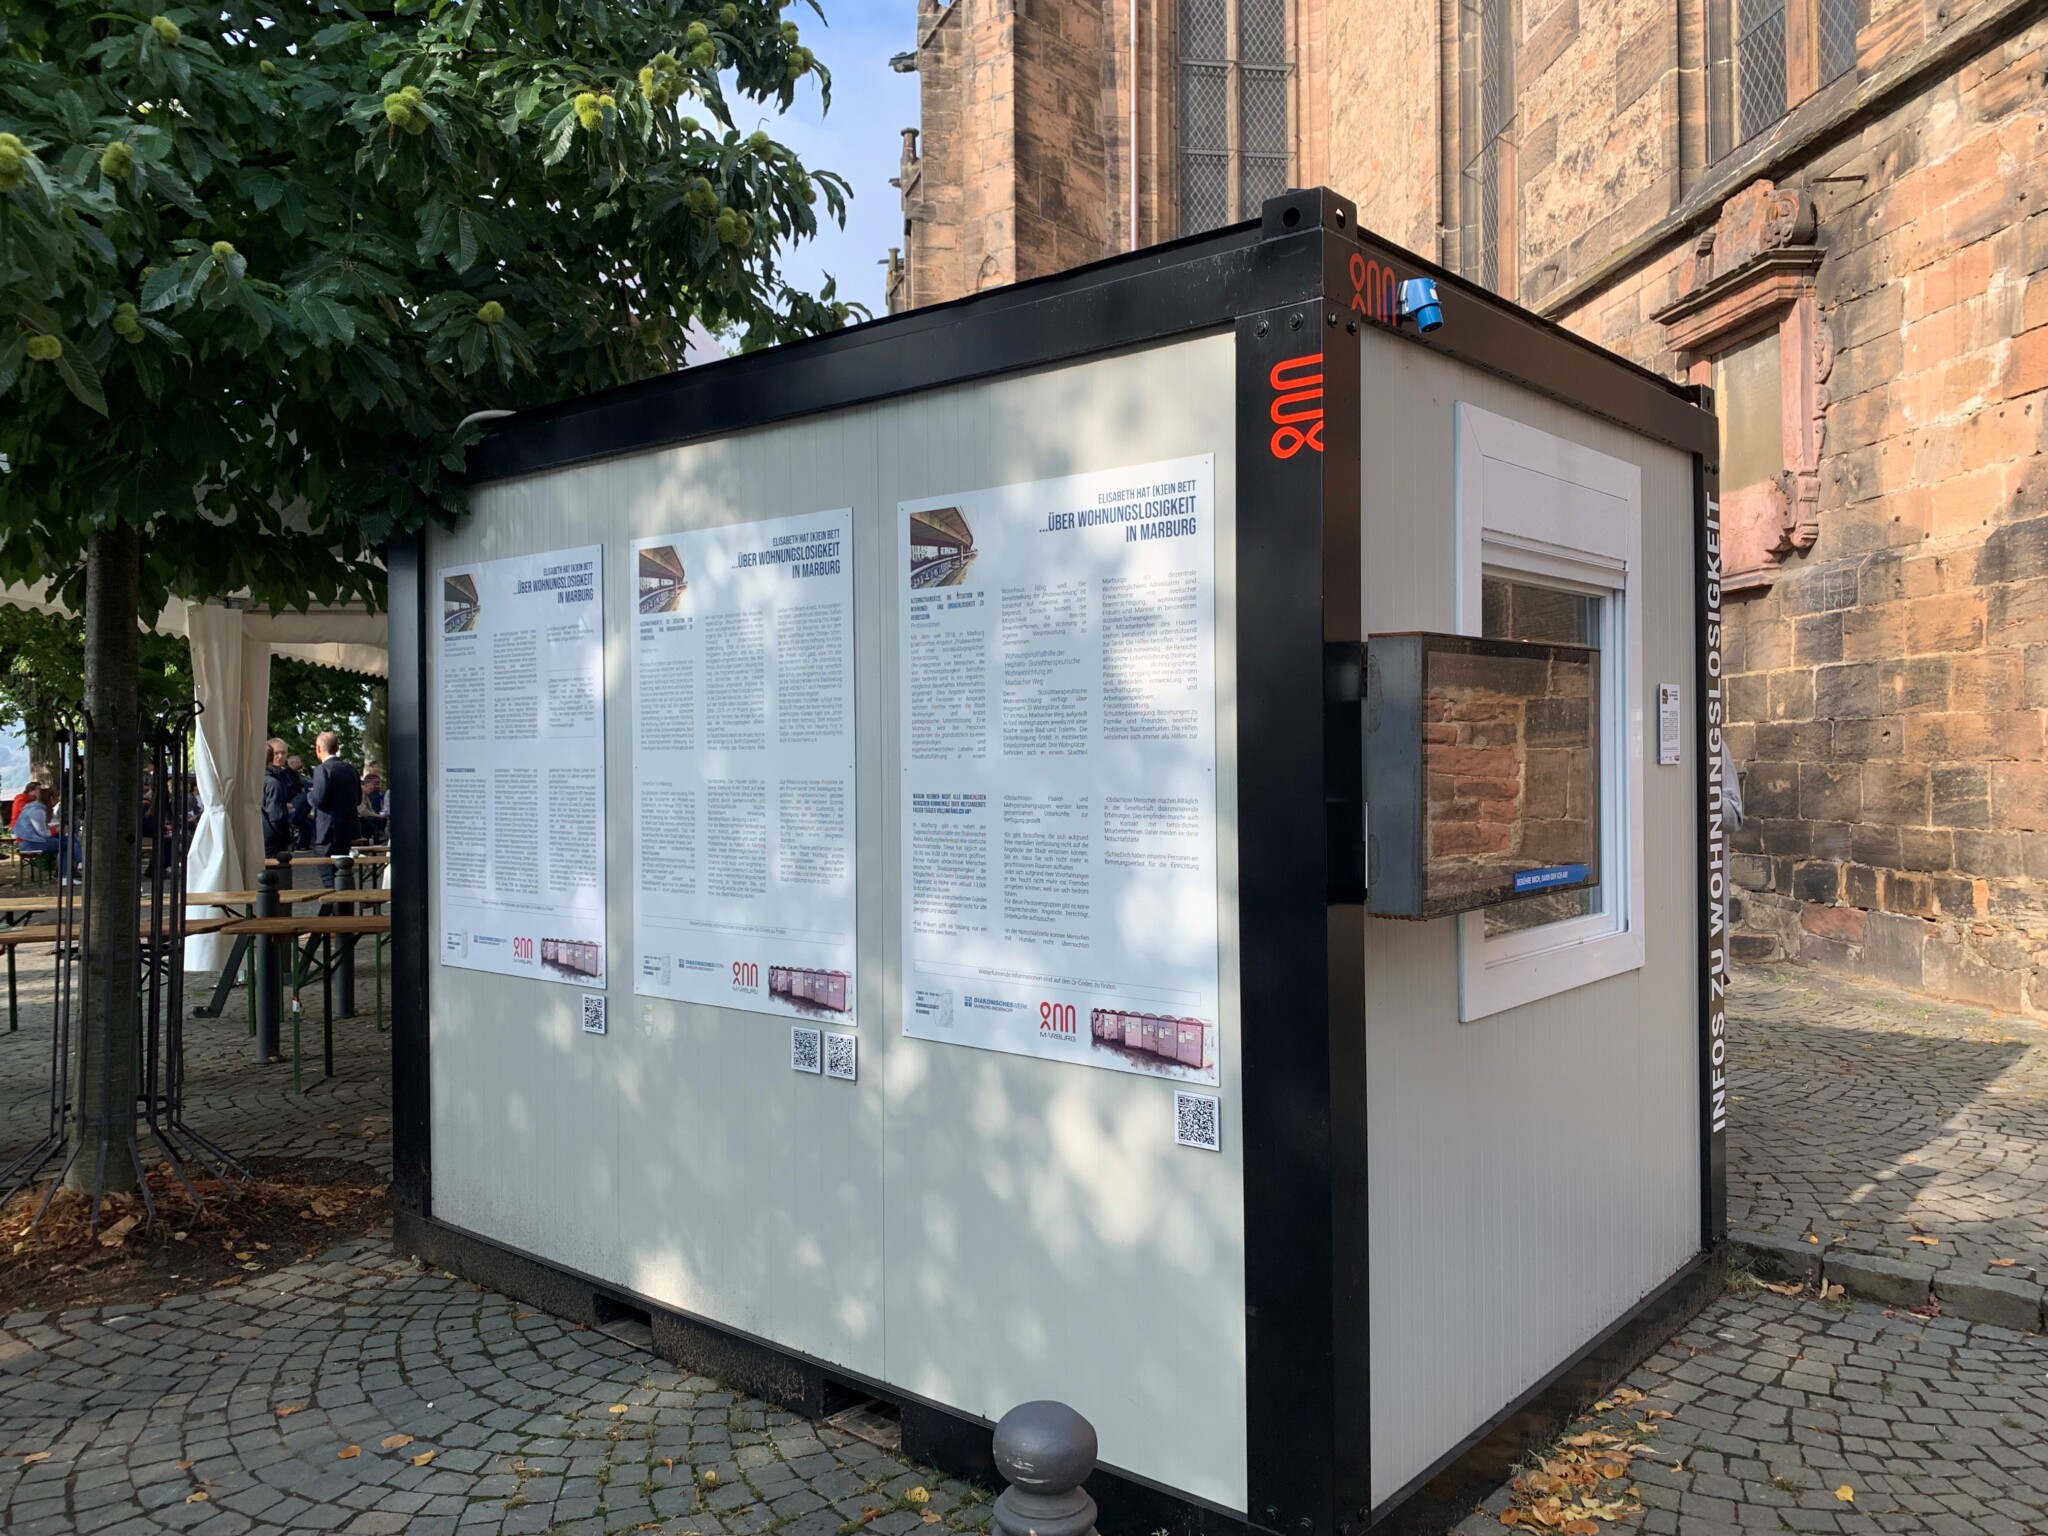 Ausstellungscontainer «Elisabeth hat (k)ein Bett»: Informationen über das Leben von obdach- und wohnungslosen Menschen in Marburg.